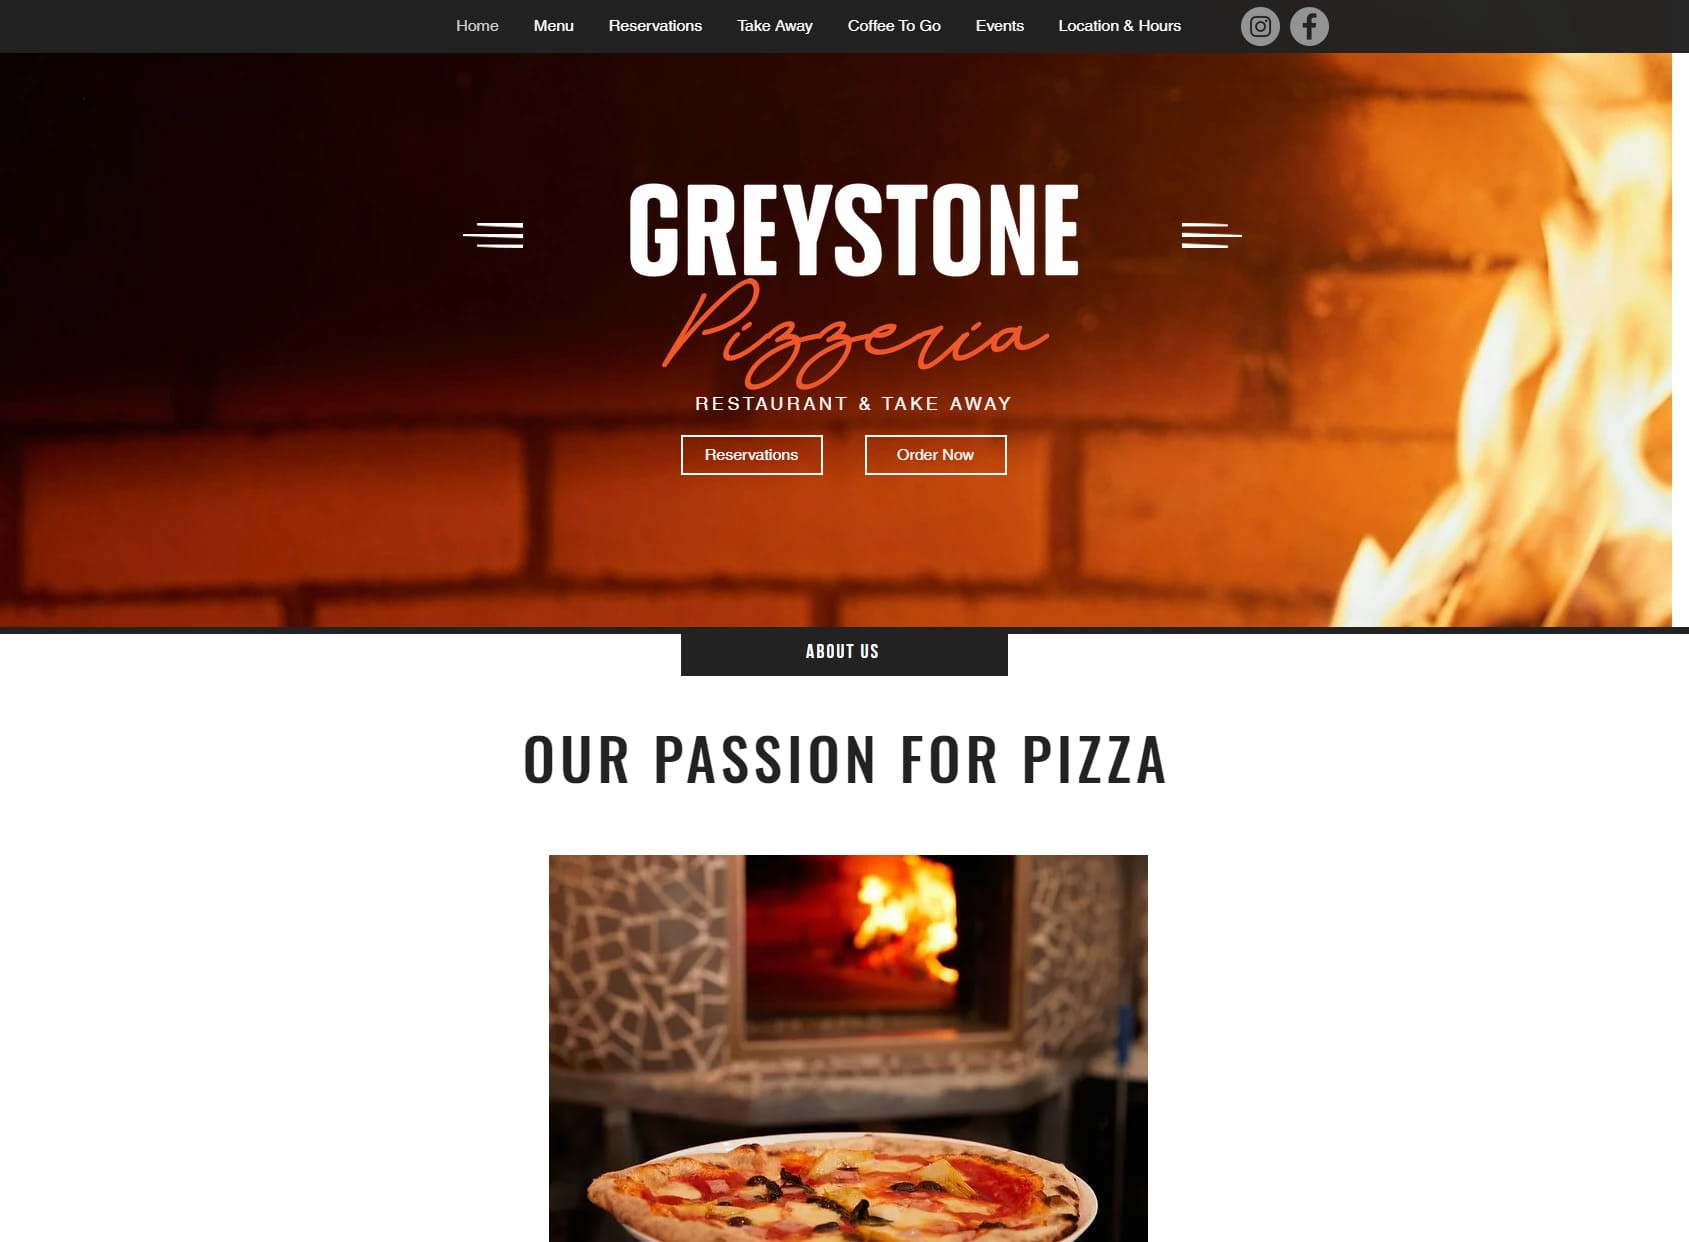 Greystone Pizzeria